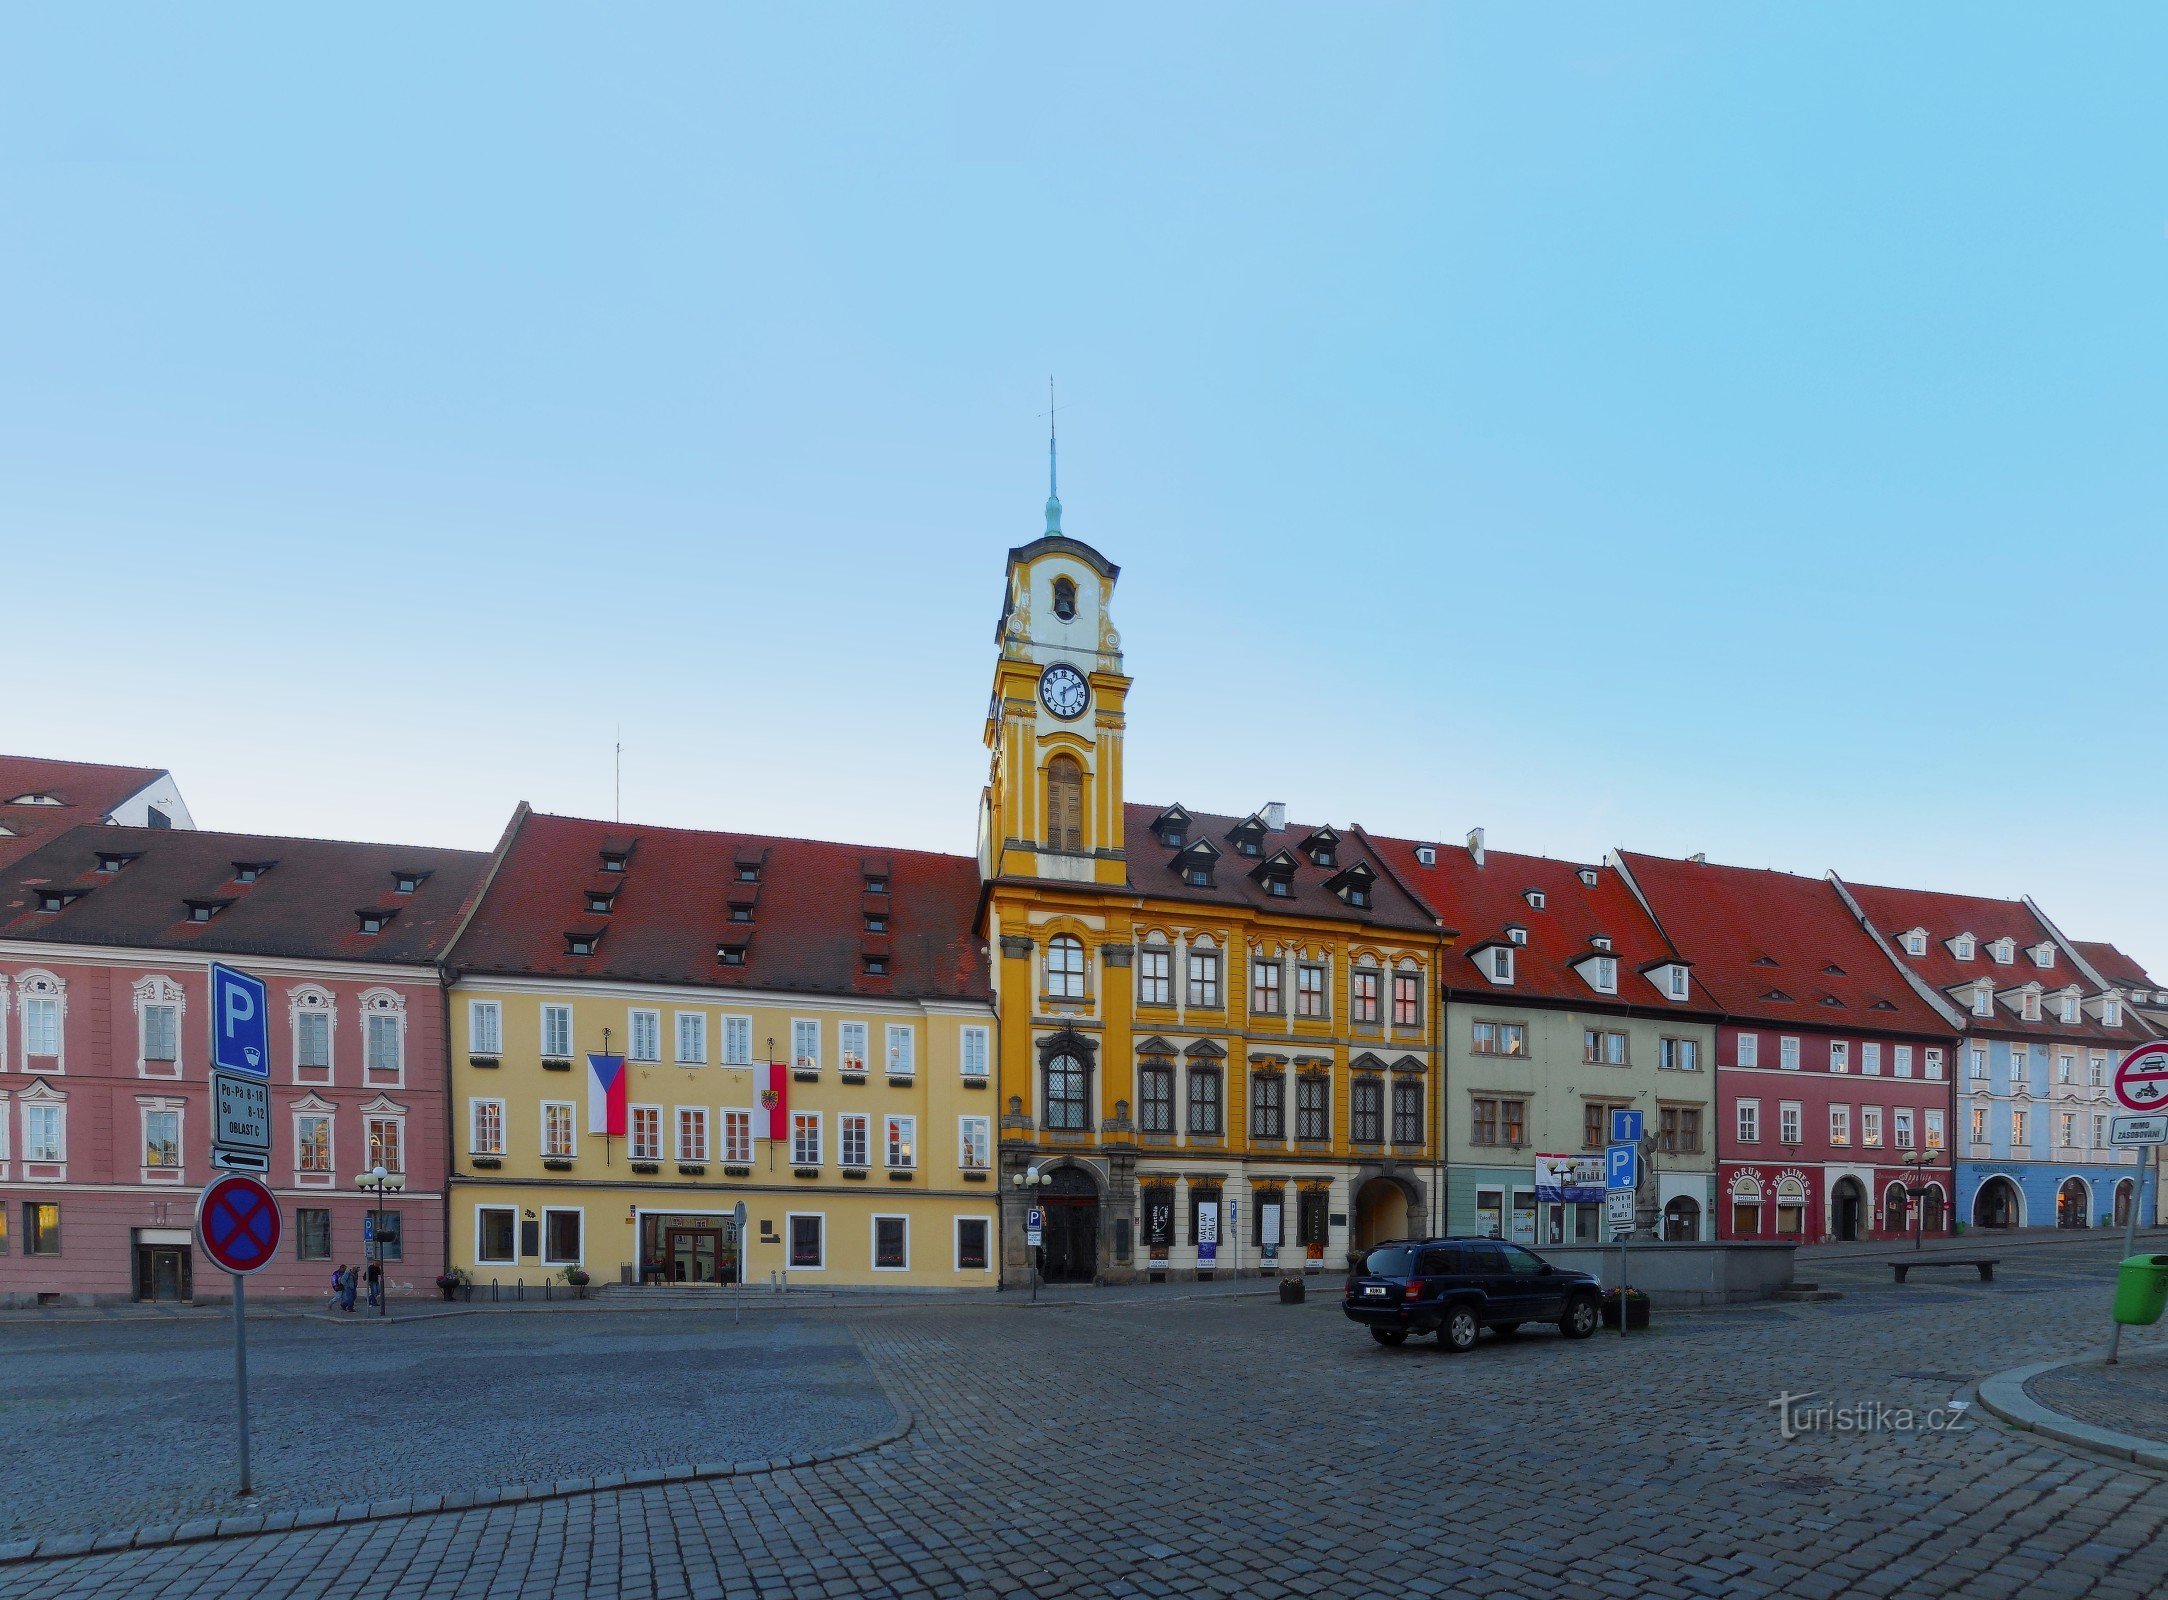 Nova prefeitura, praça Krále Jiřího z Poděbrady, Cheb